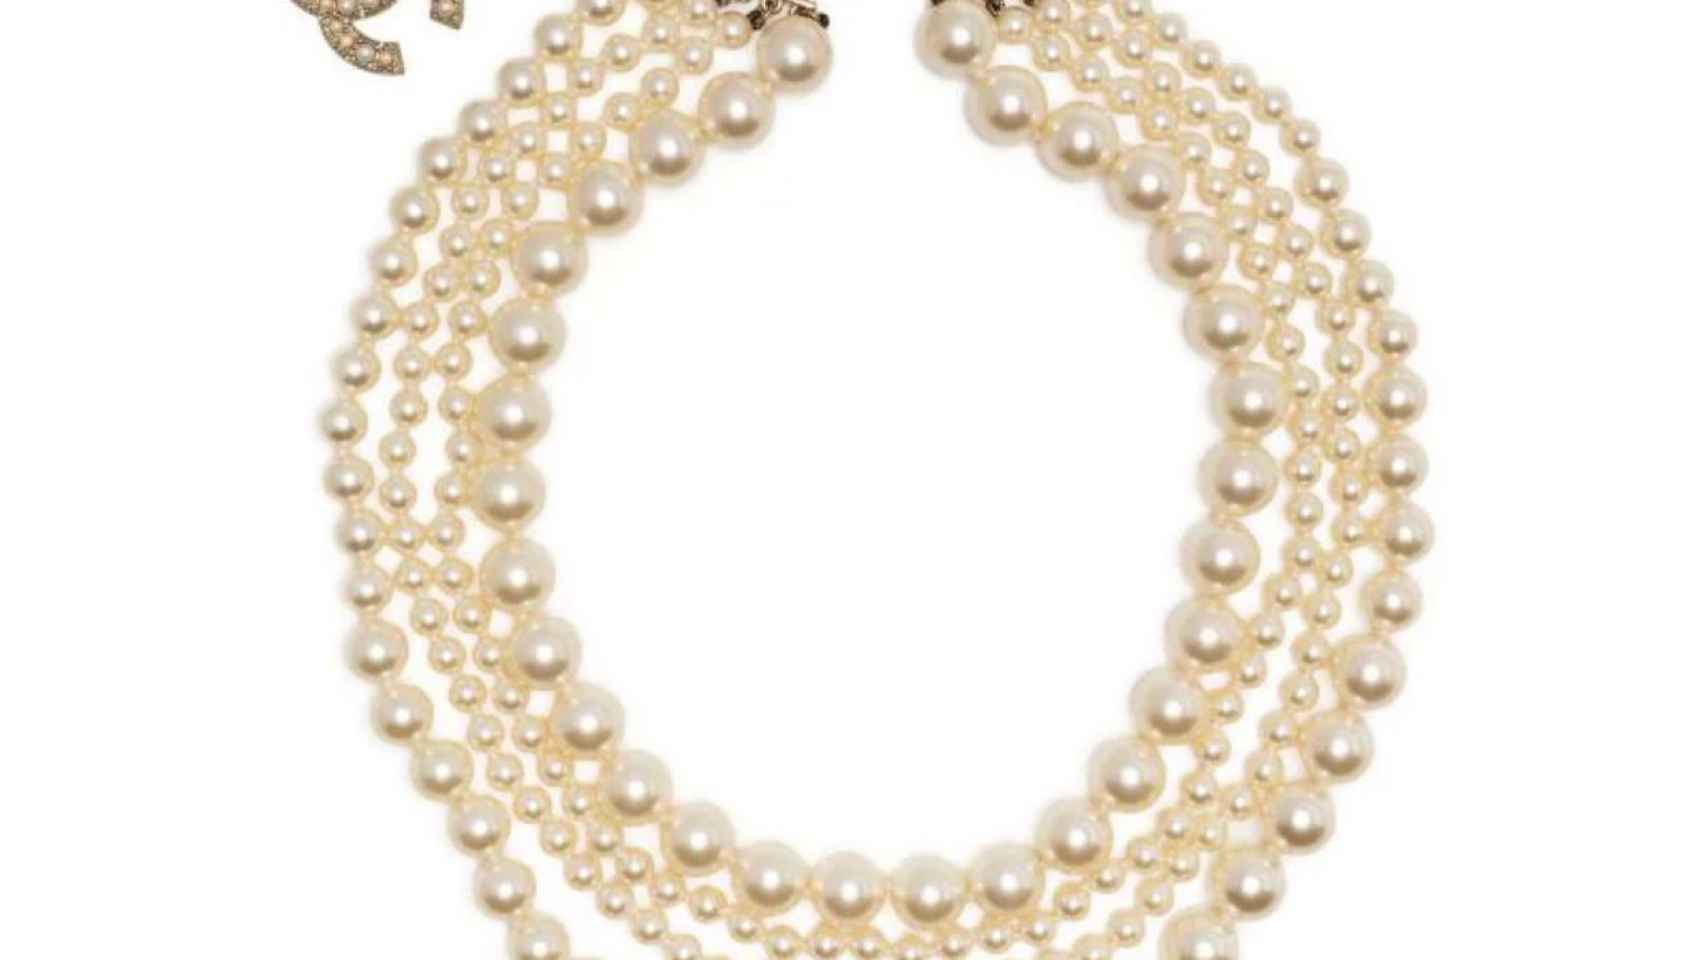 Uno de los collares de Chanel que se llevaron durante la orgía de La Malcontenta